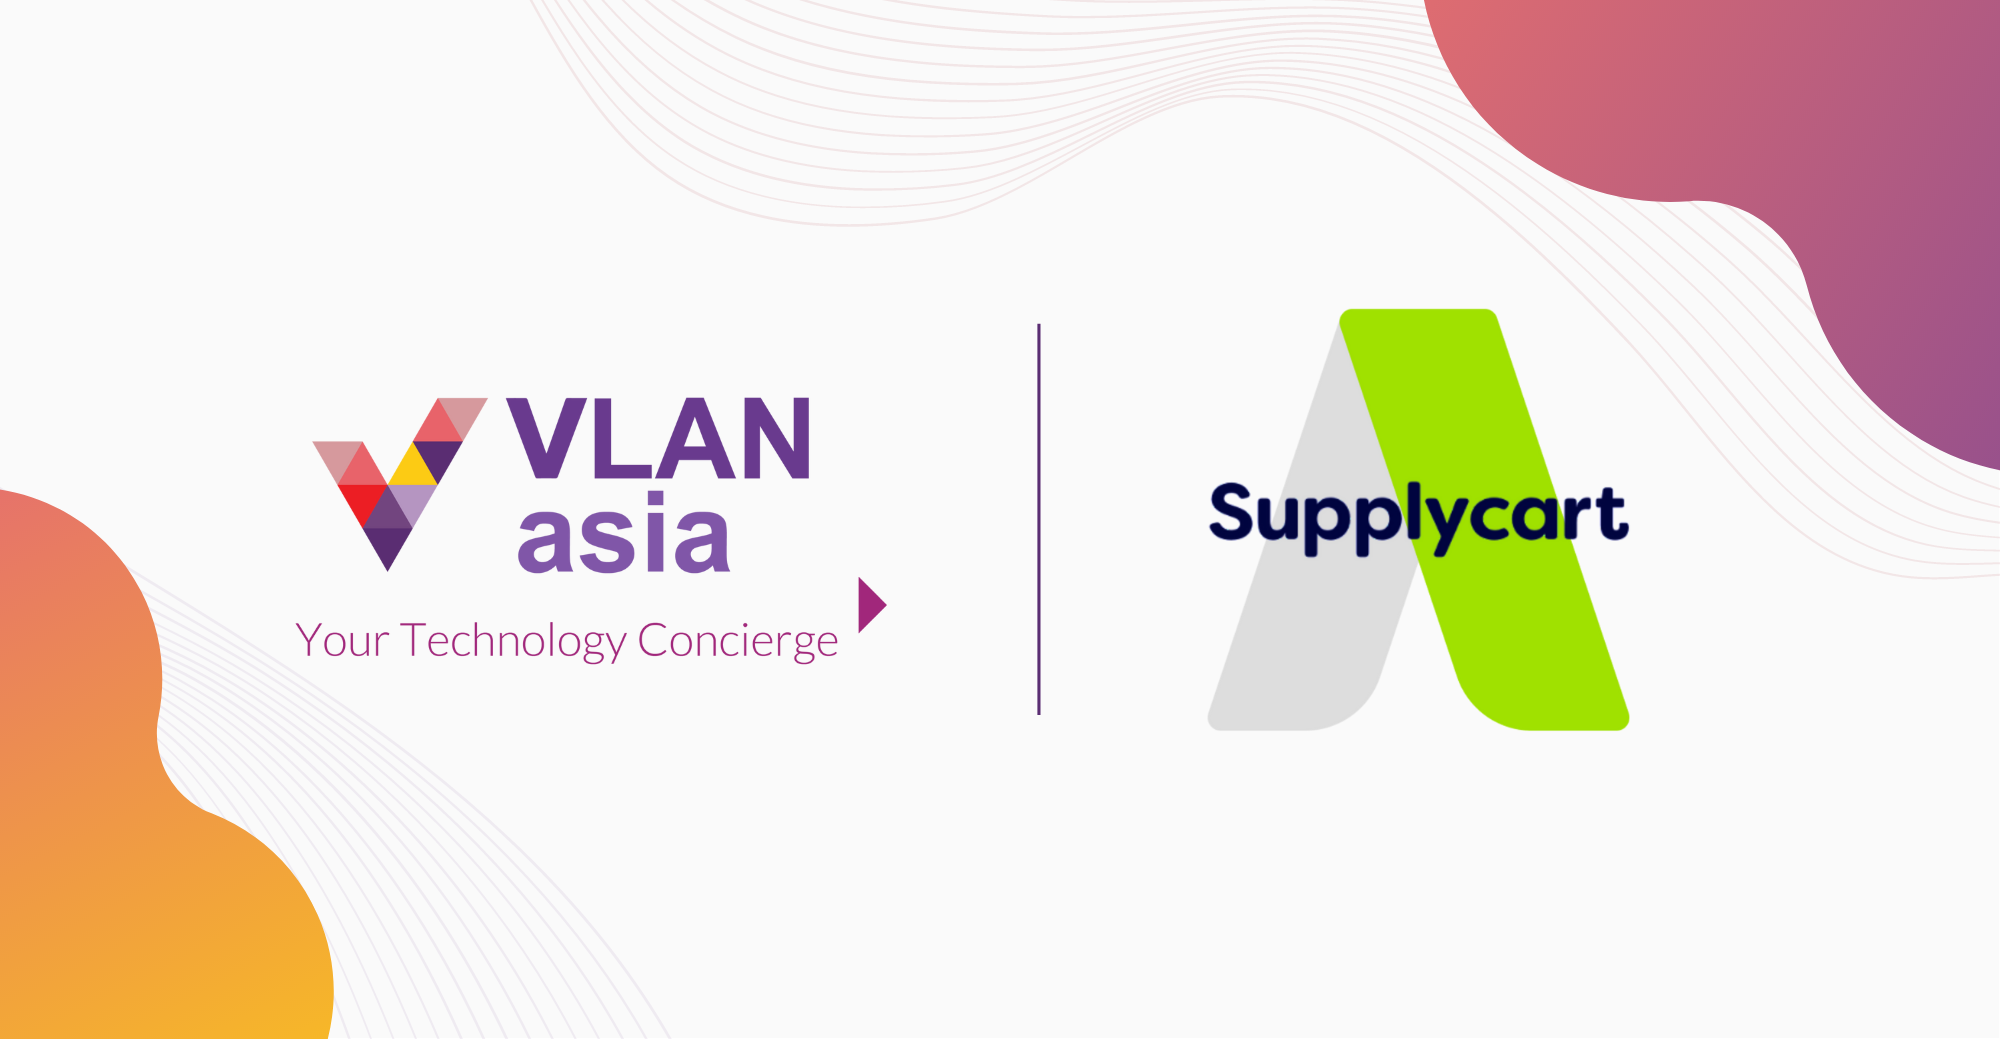 vlan-supplycart-partnership-MOU